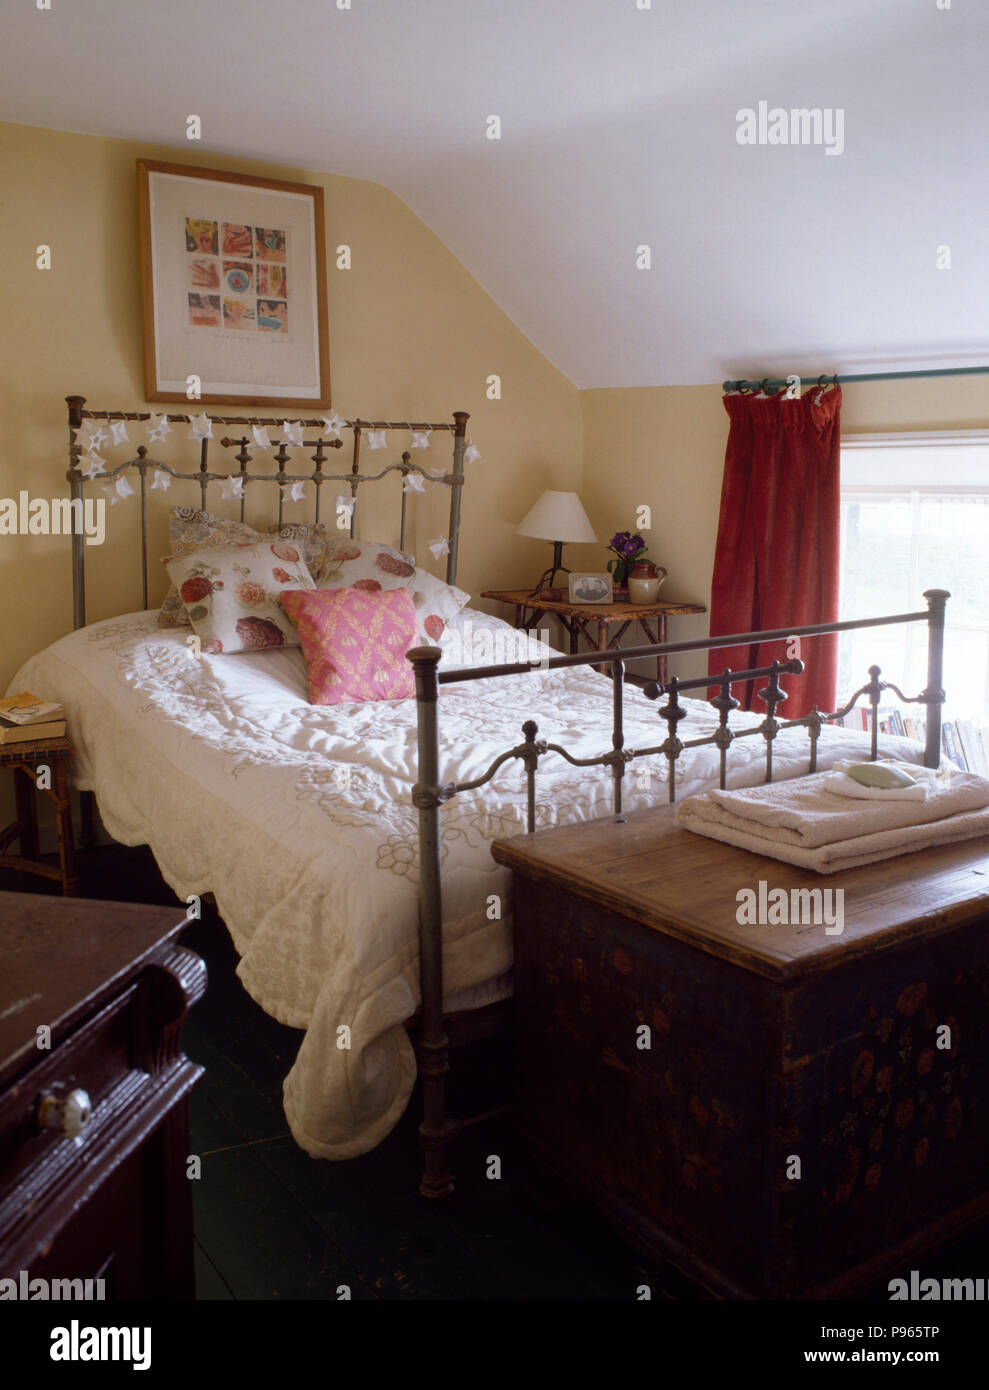 Couette blanche sur lit en laiton vintage cottage chambre avec un coffre en bois peint au pied du lit Banque D'Images